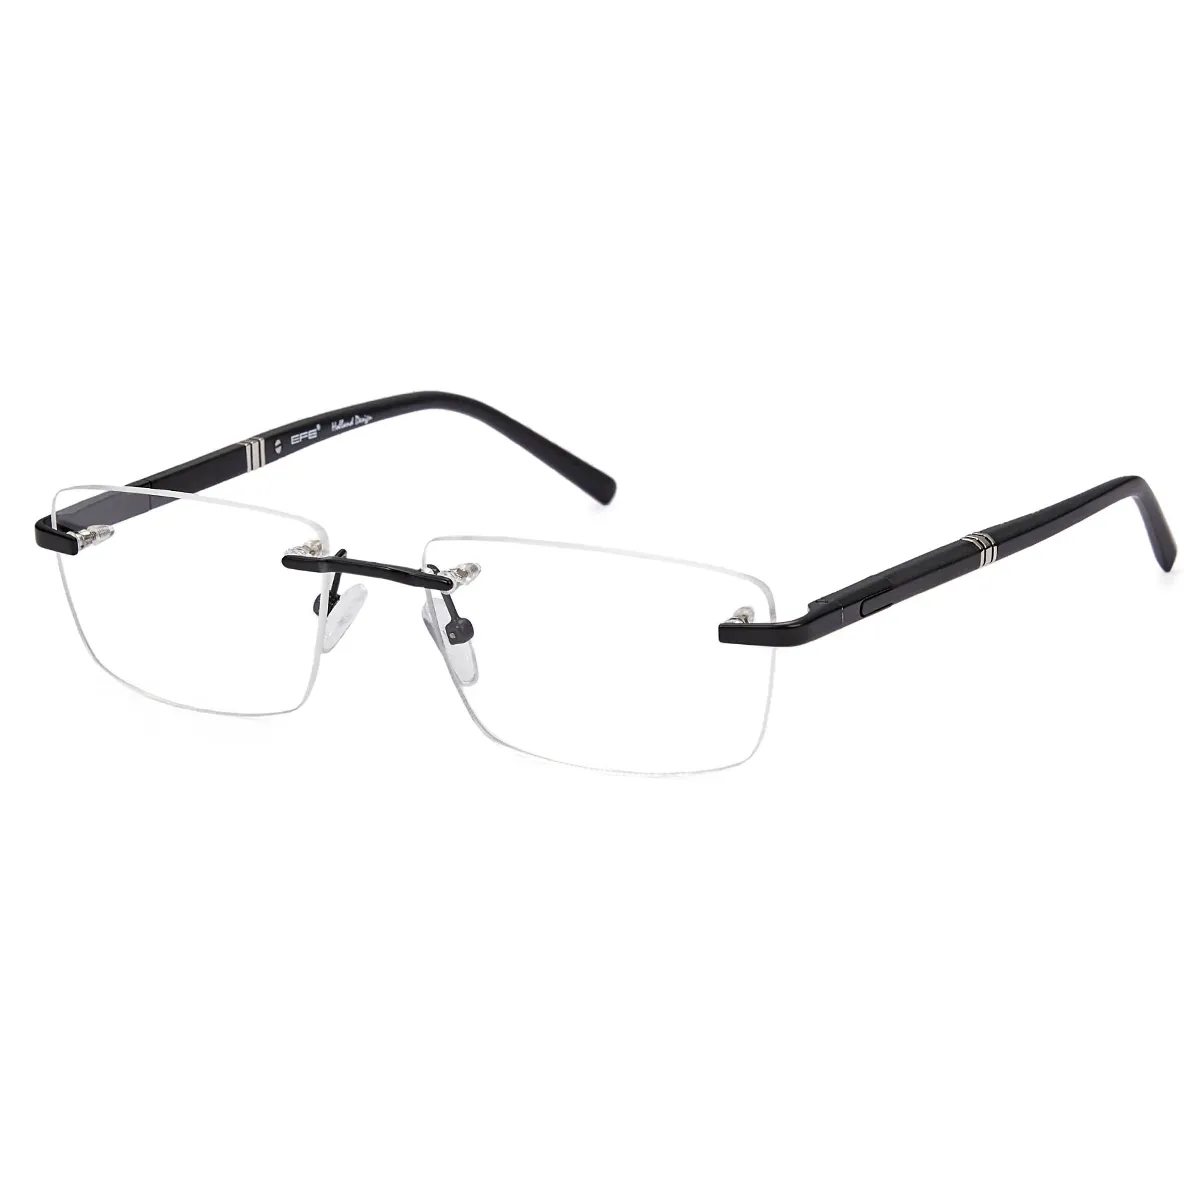 John - Rectangle Black Glasses for Men